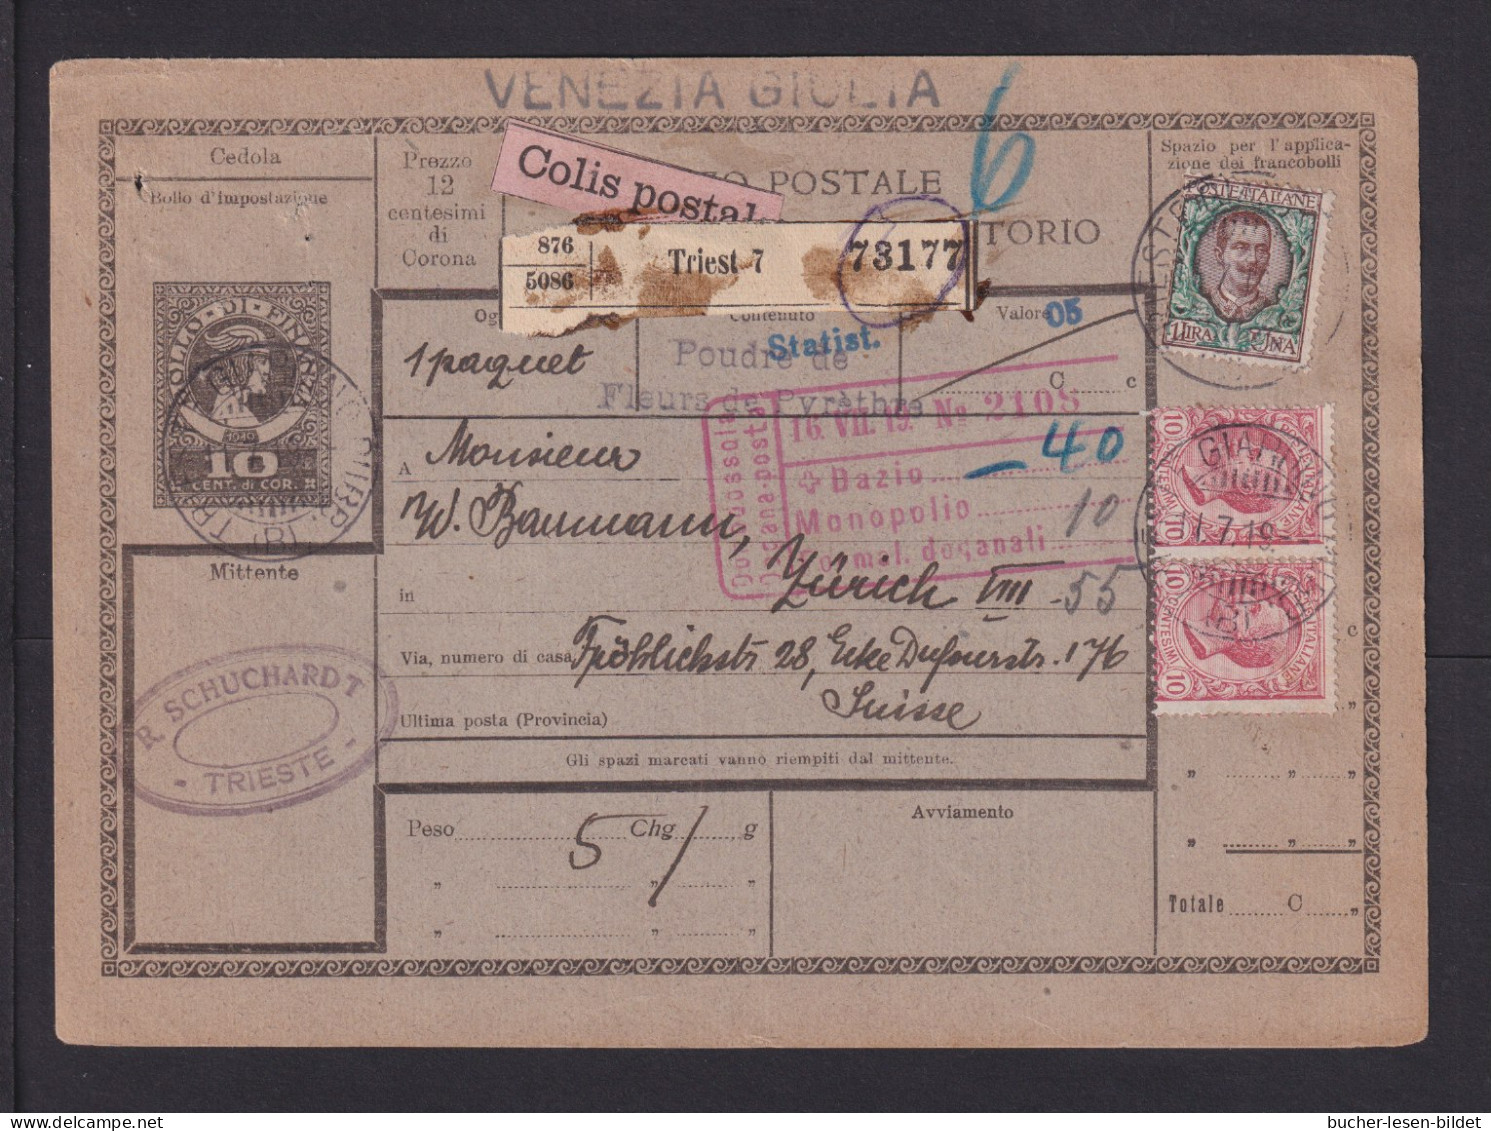 1919 - 10 C. Paketkarte "VENZIA GIULA" Ab Triest 7 Nach Zürich - Vénétie Julienne